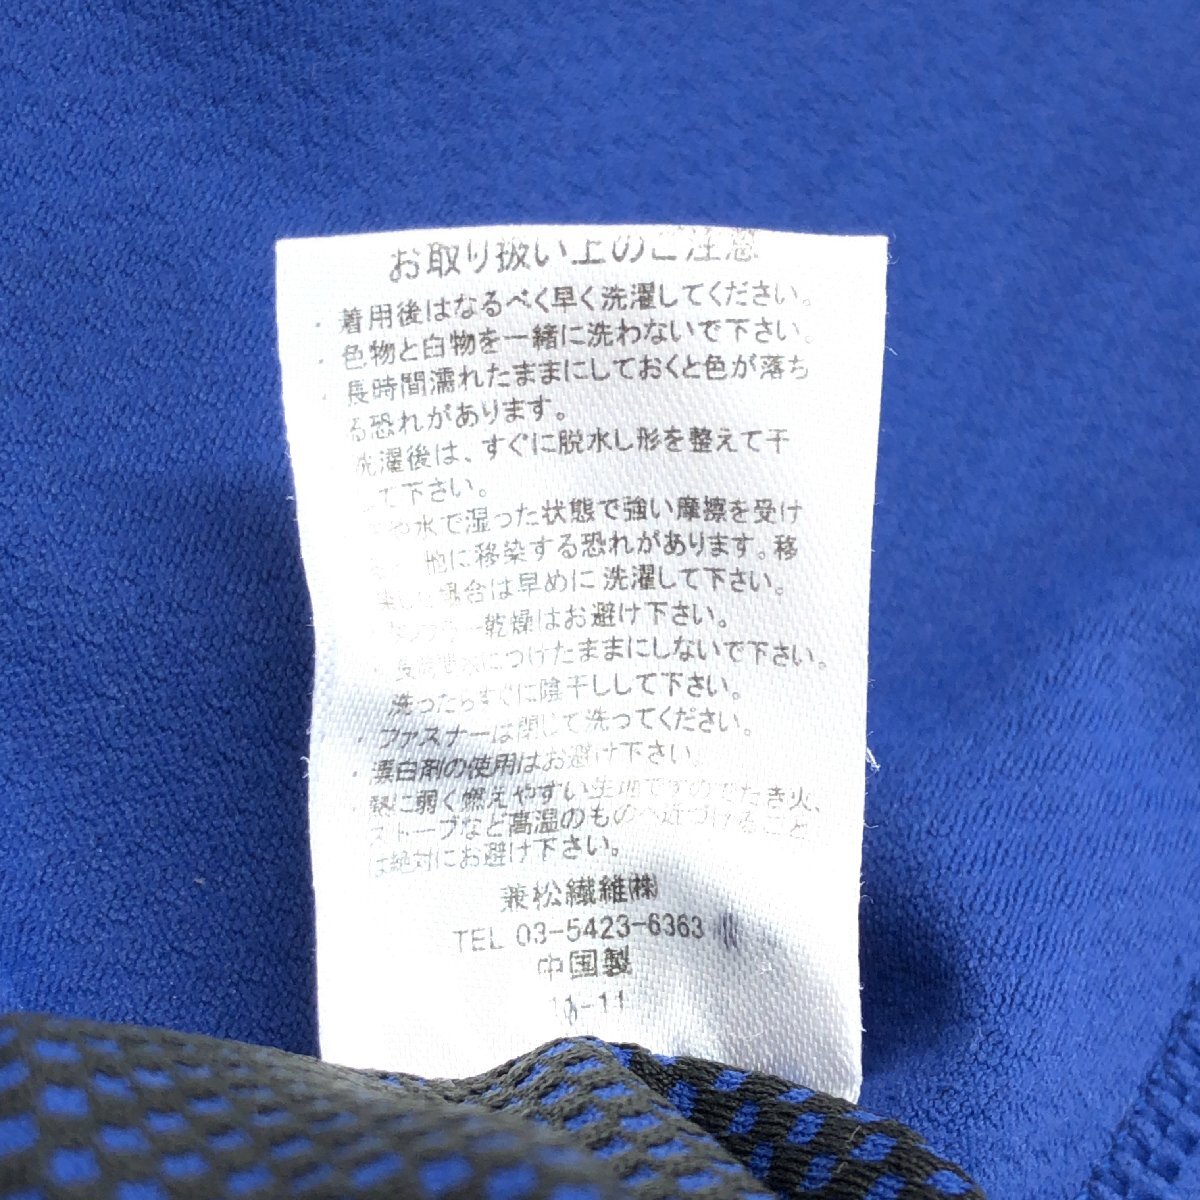 Lowe alpine ロウアルパイン ハーフジップ 吸水速乾 ドライ ジャージ アウトドアシャツ M 青 ブルー Tシャツ 長袖 ロンT メンズ 紳士の画像6